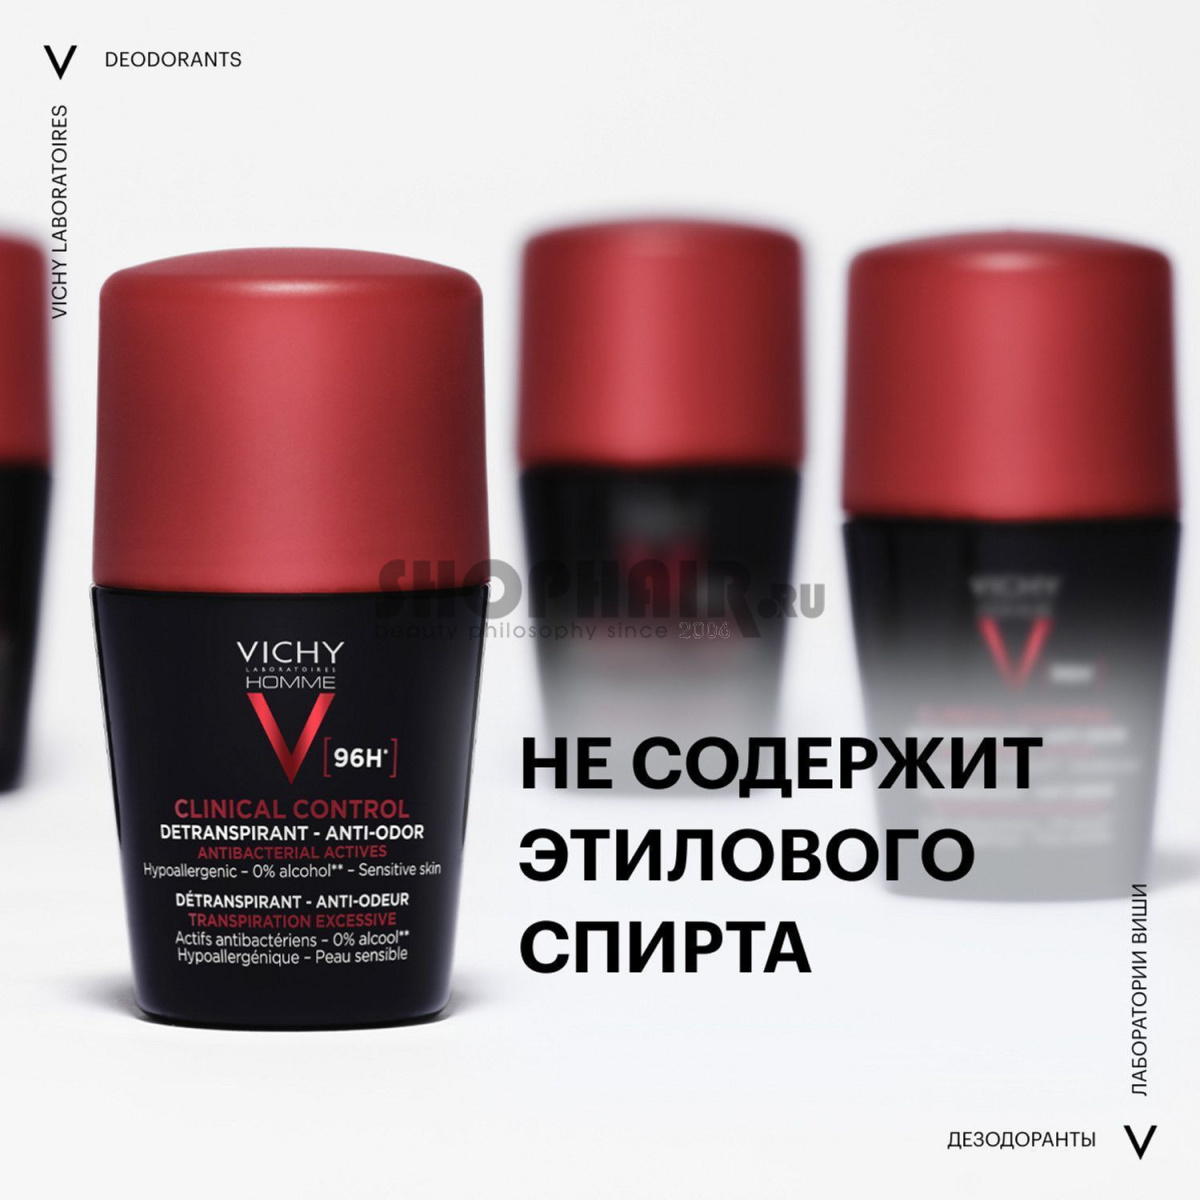 Vichy Homme Clinical Control - Дезодорант-антиперспирант 96 ч 50 мл Vichy (Франция) купить по цене 1 419 руб.